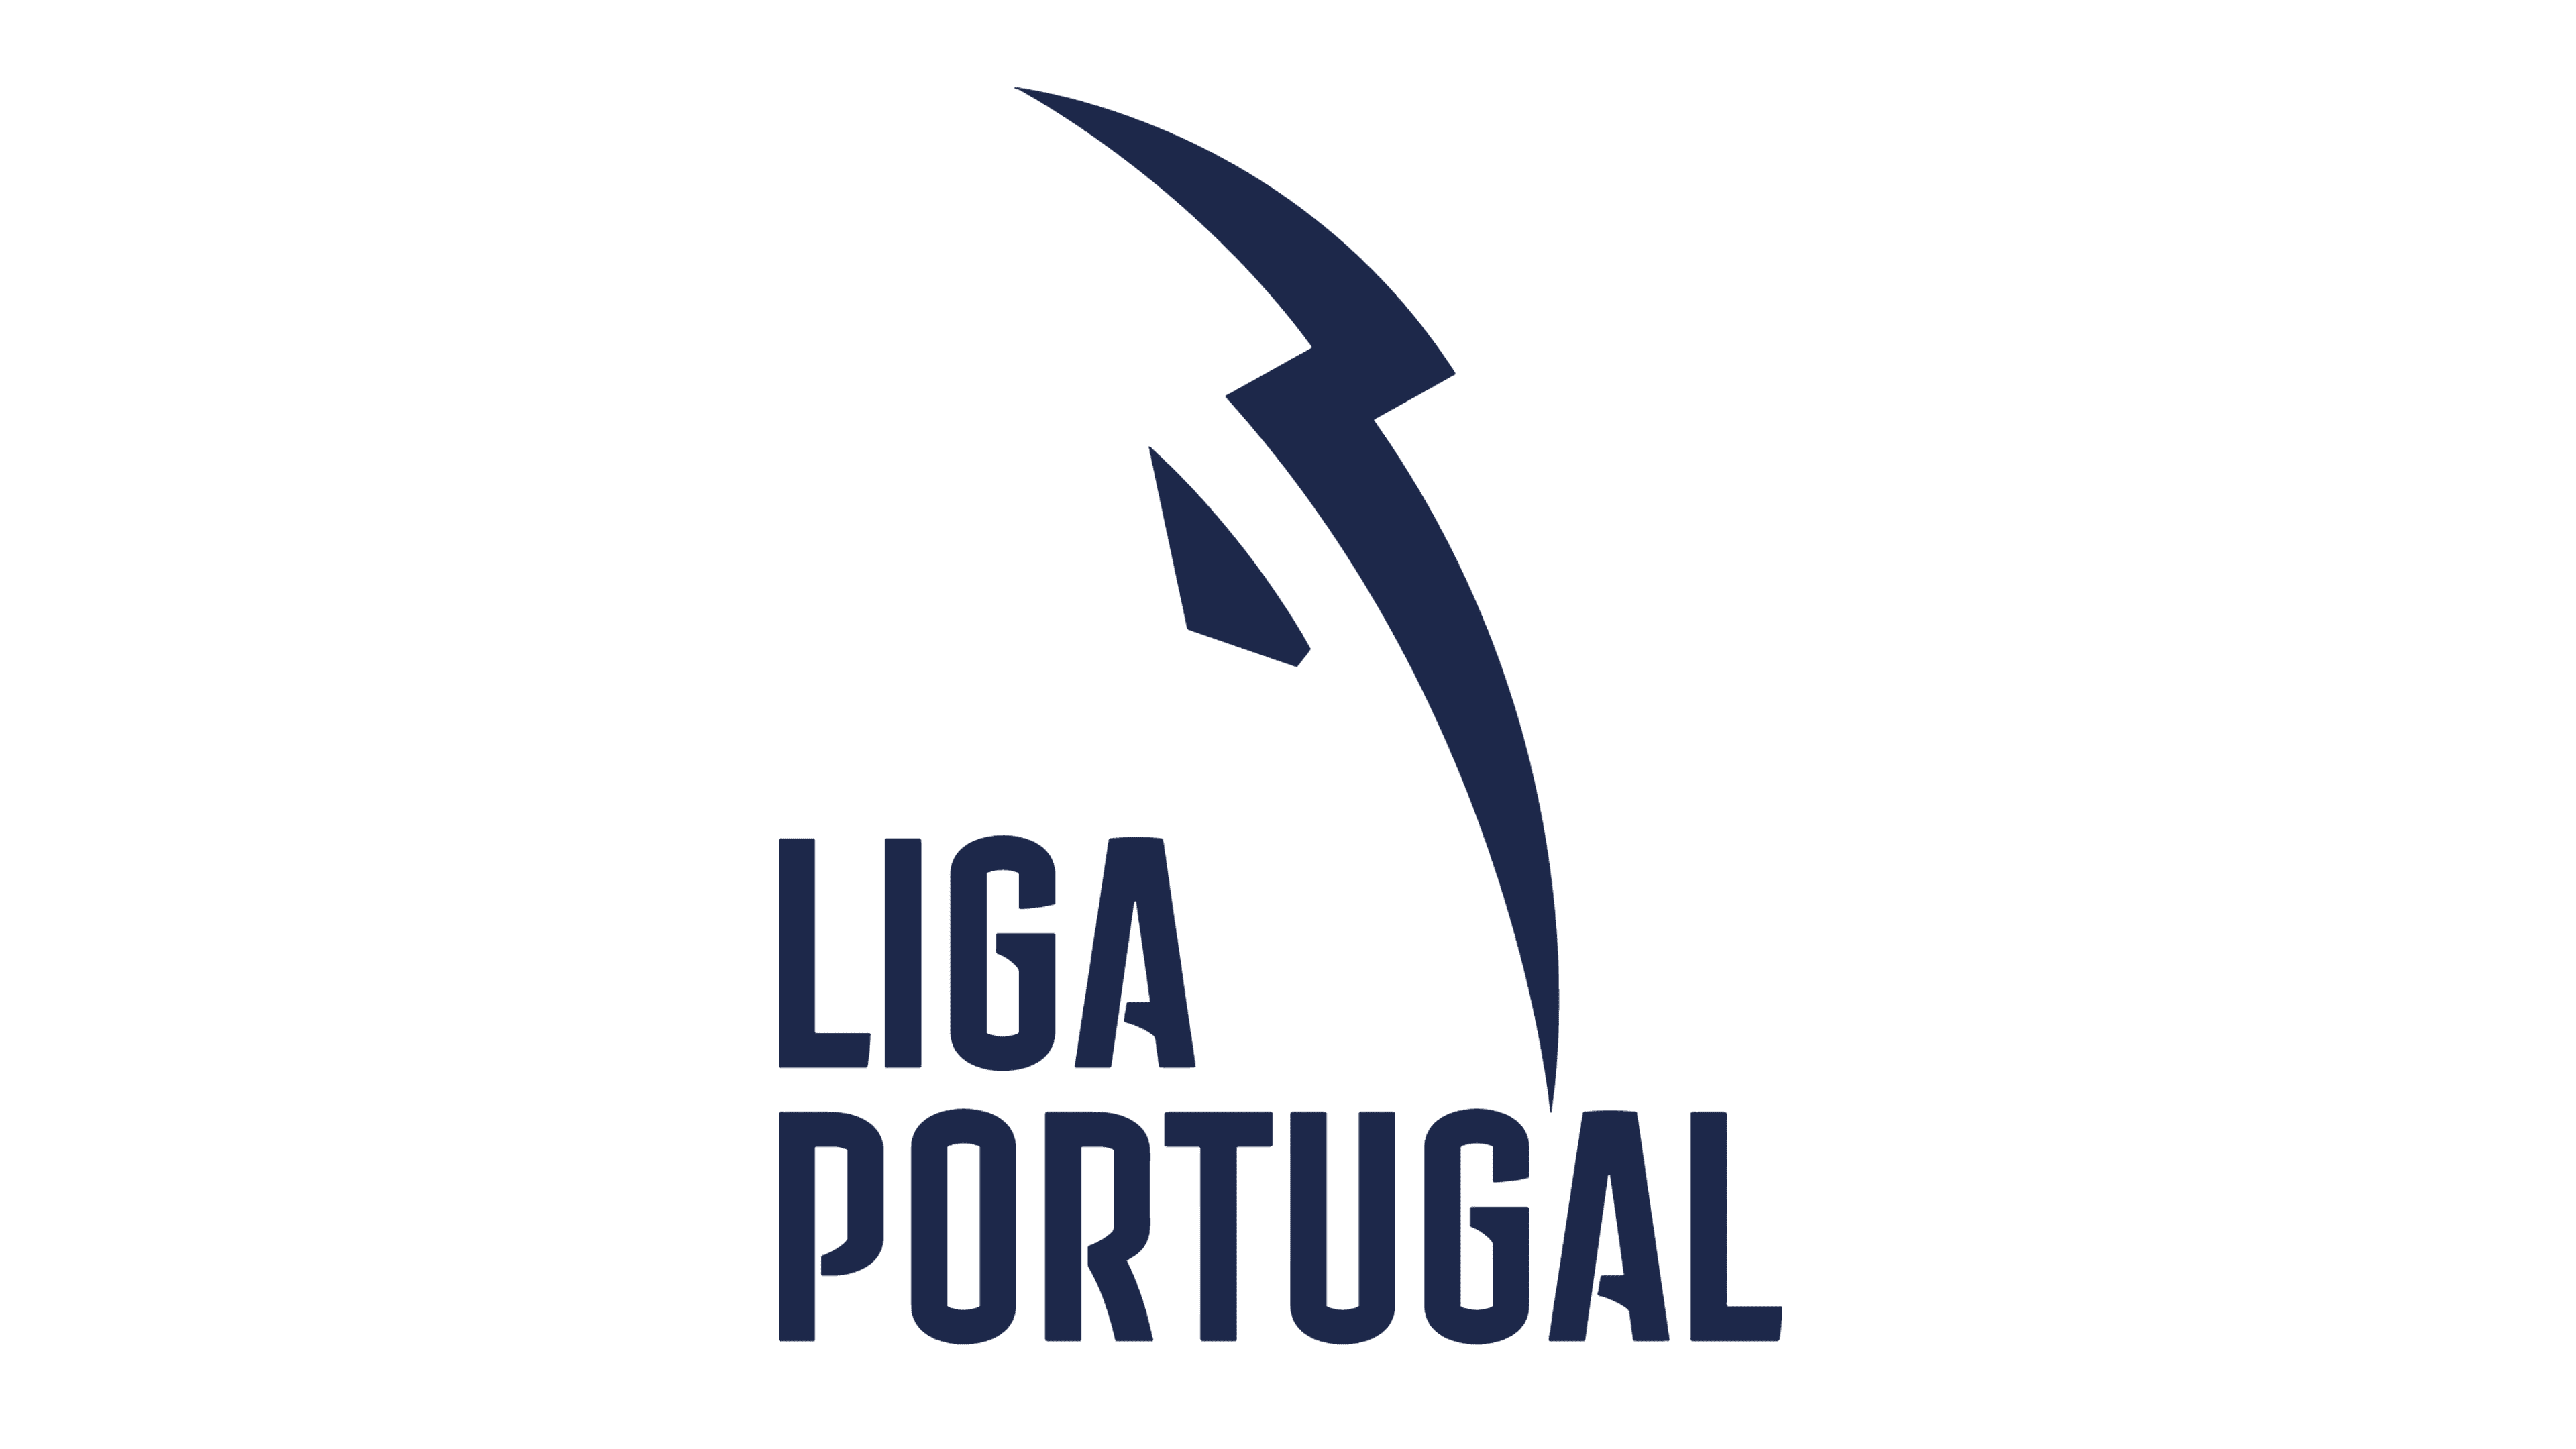 Primera liga de portugal